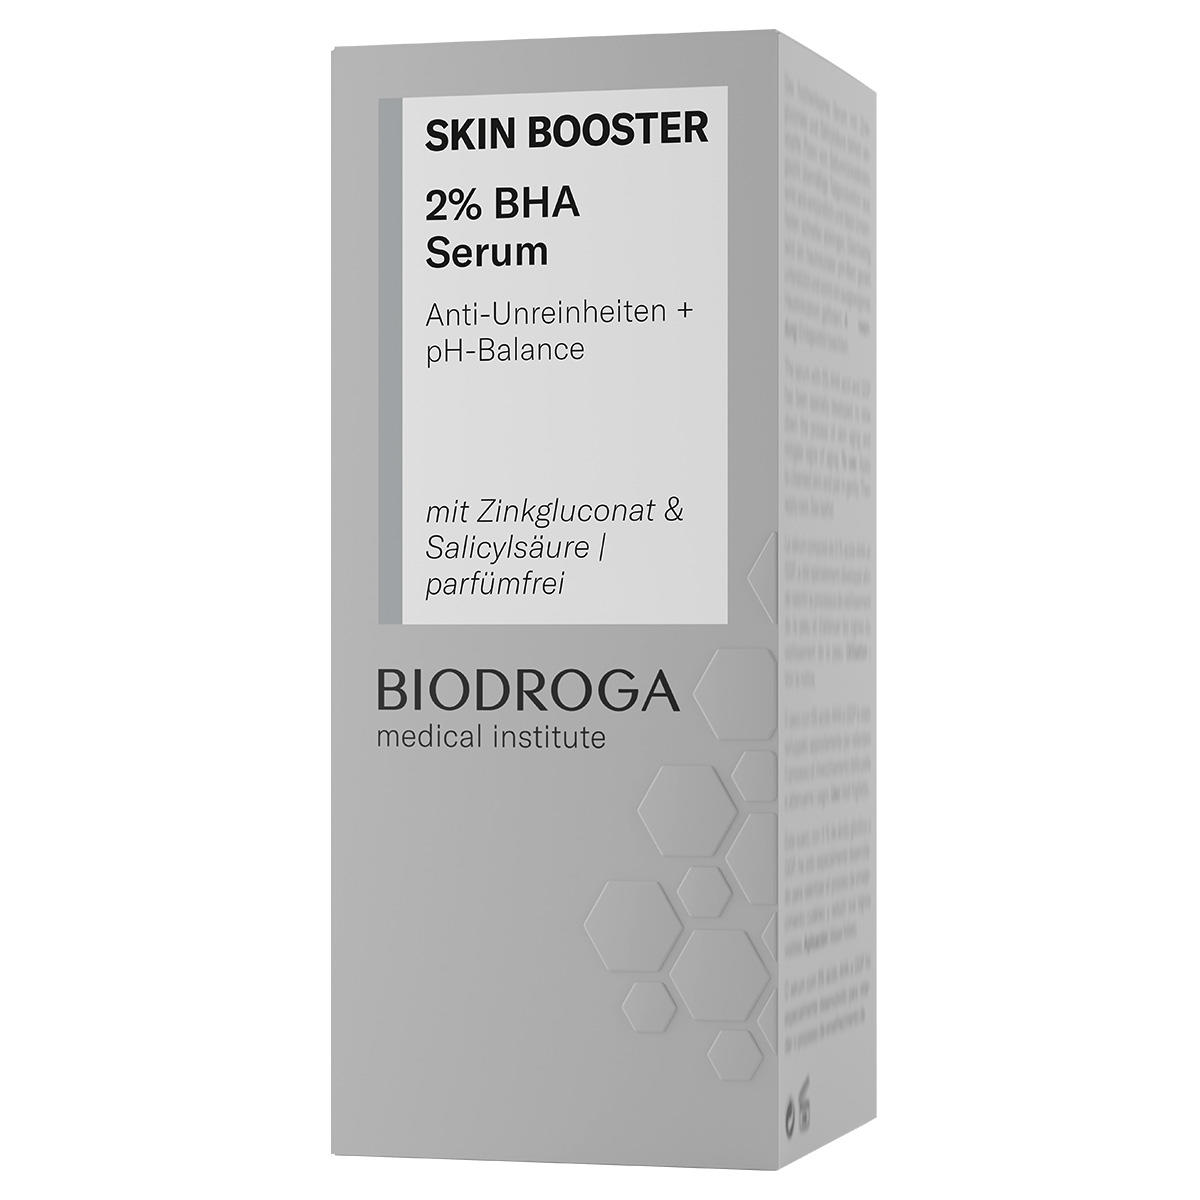 BIODROGA Medical Institute SKIN BOOSTER 2 % BHA Serum 15 ml - 2